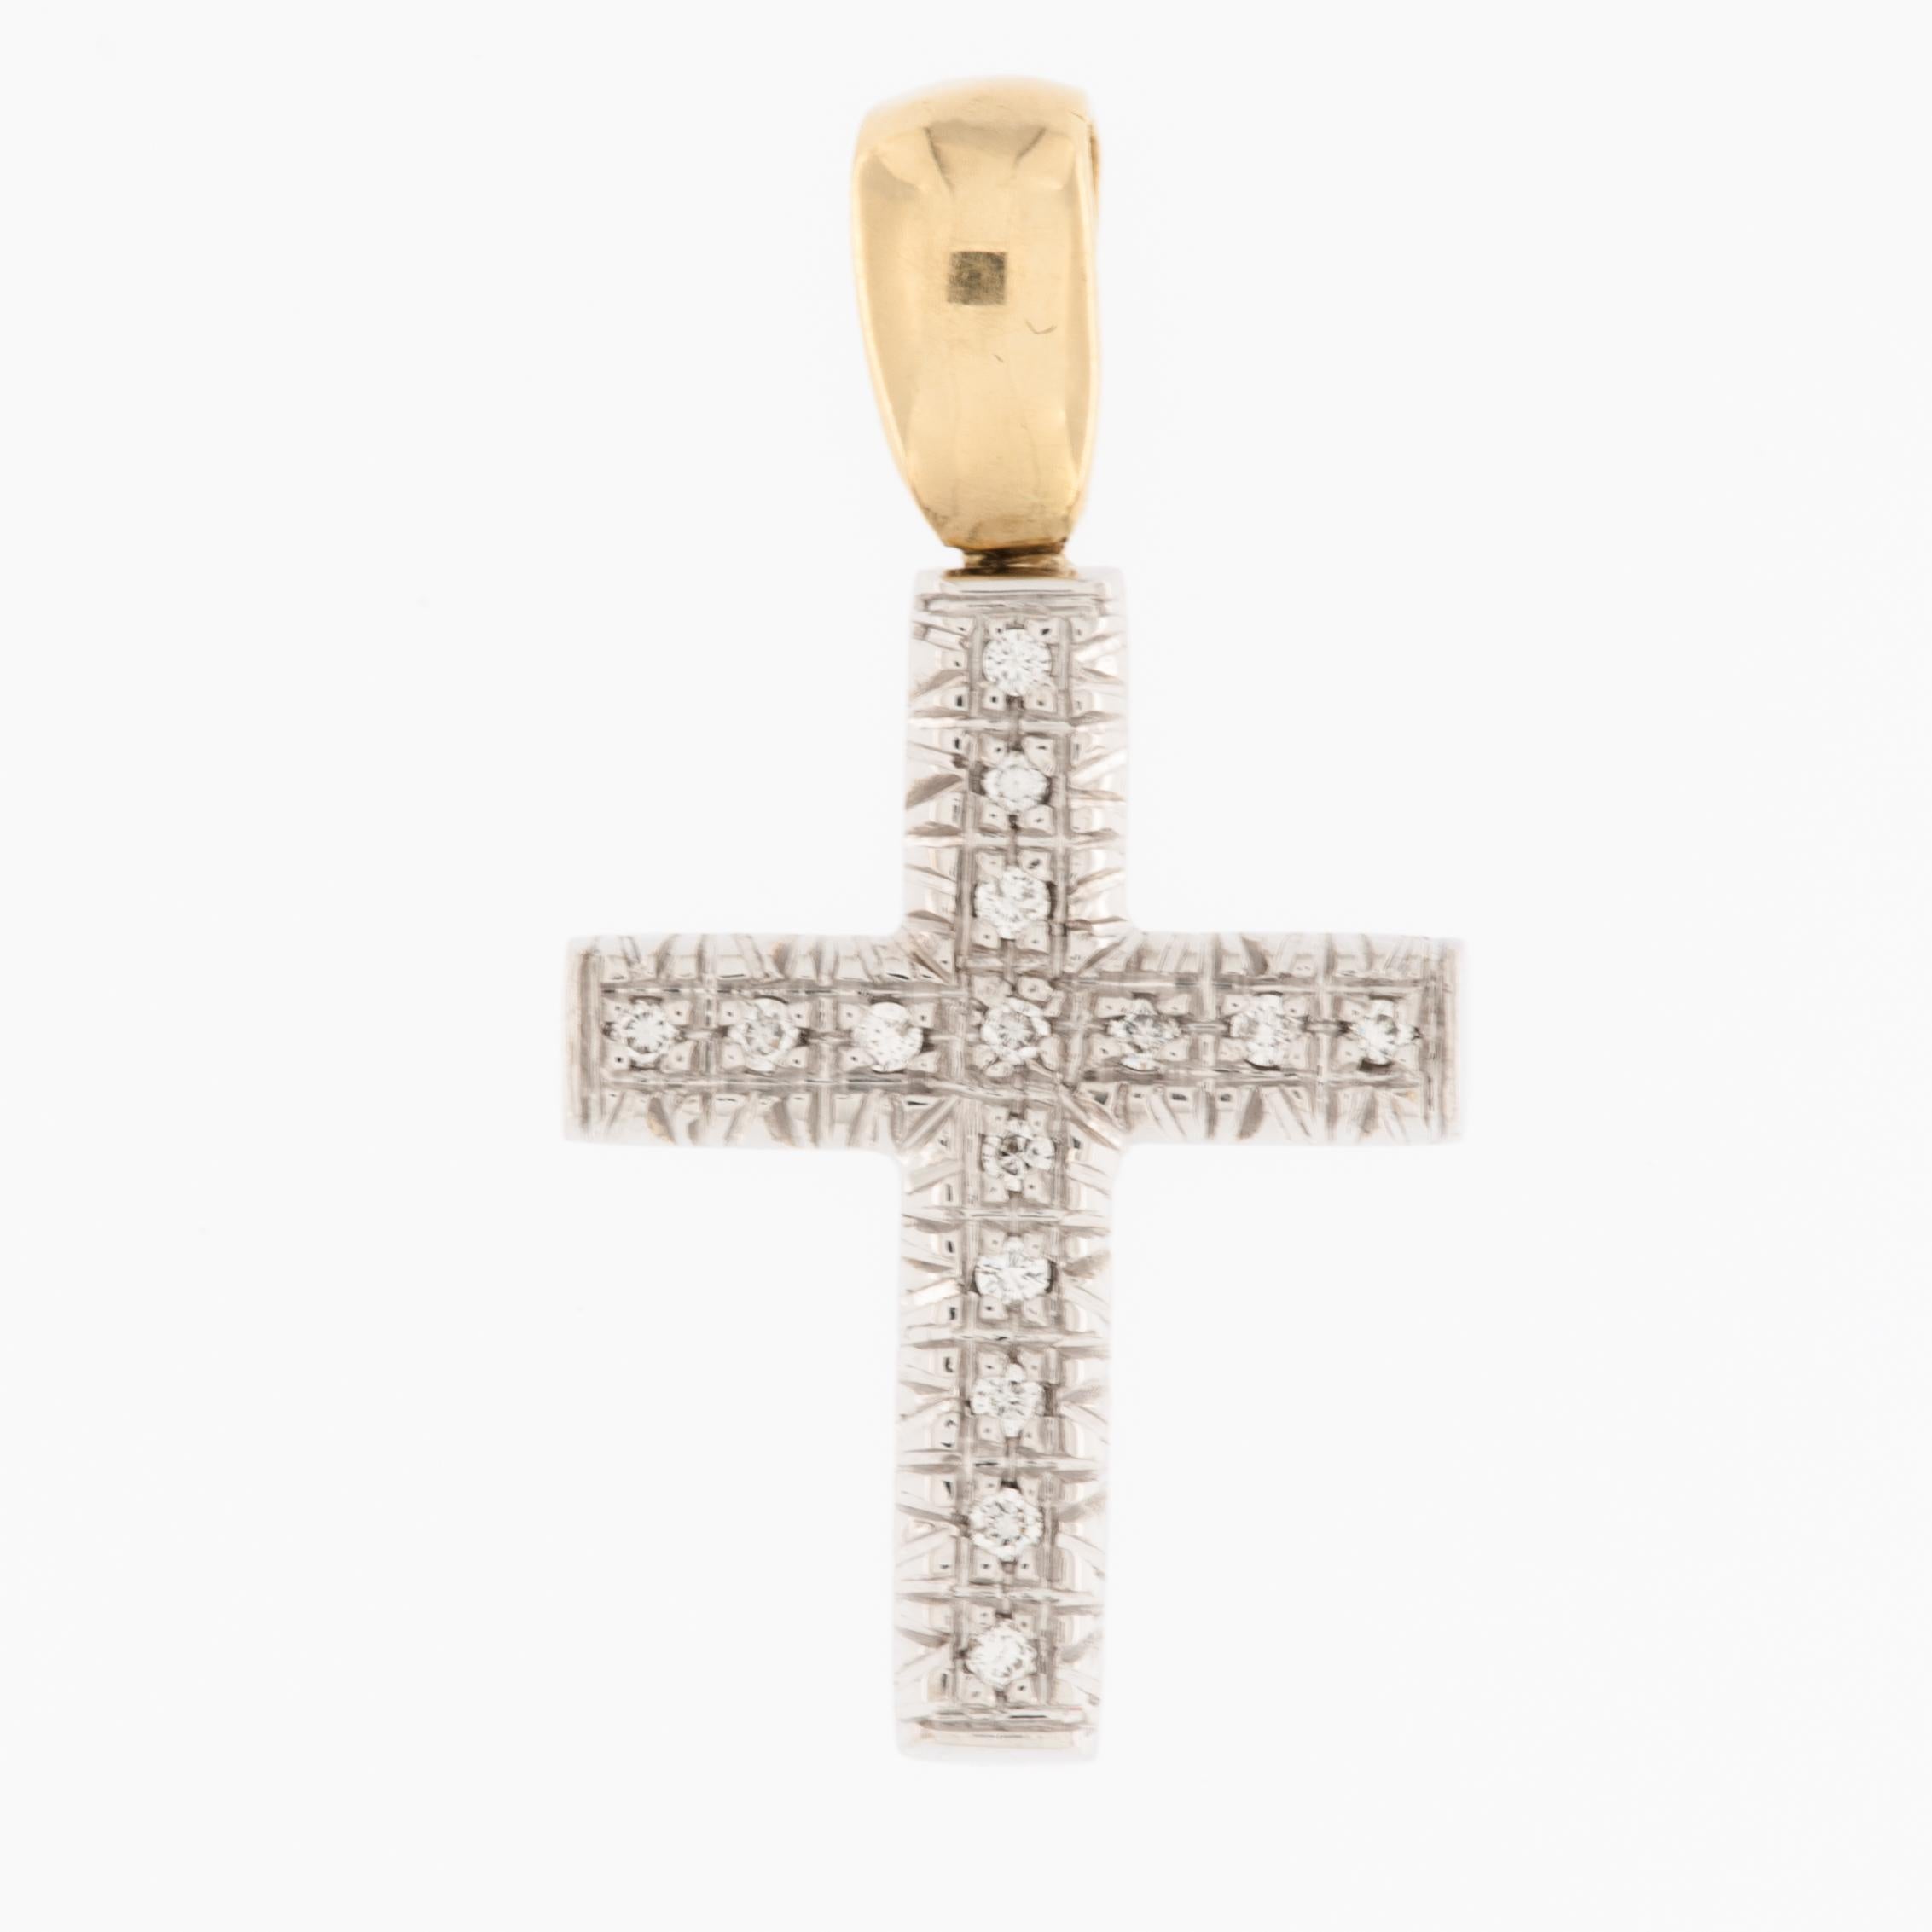 La croix italienne en or jaune et blanc avec diamants, qui présente un travail en relief, est un bijou étonnant qui allie le savoir-faire traditionnel à l'élégance des métaux précieux et des pierres précieuses étincelantes. 

La croix est fabriquée